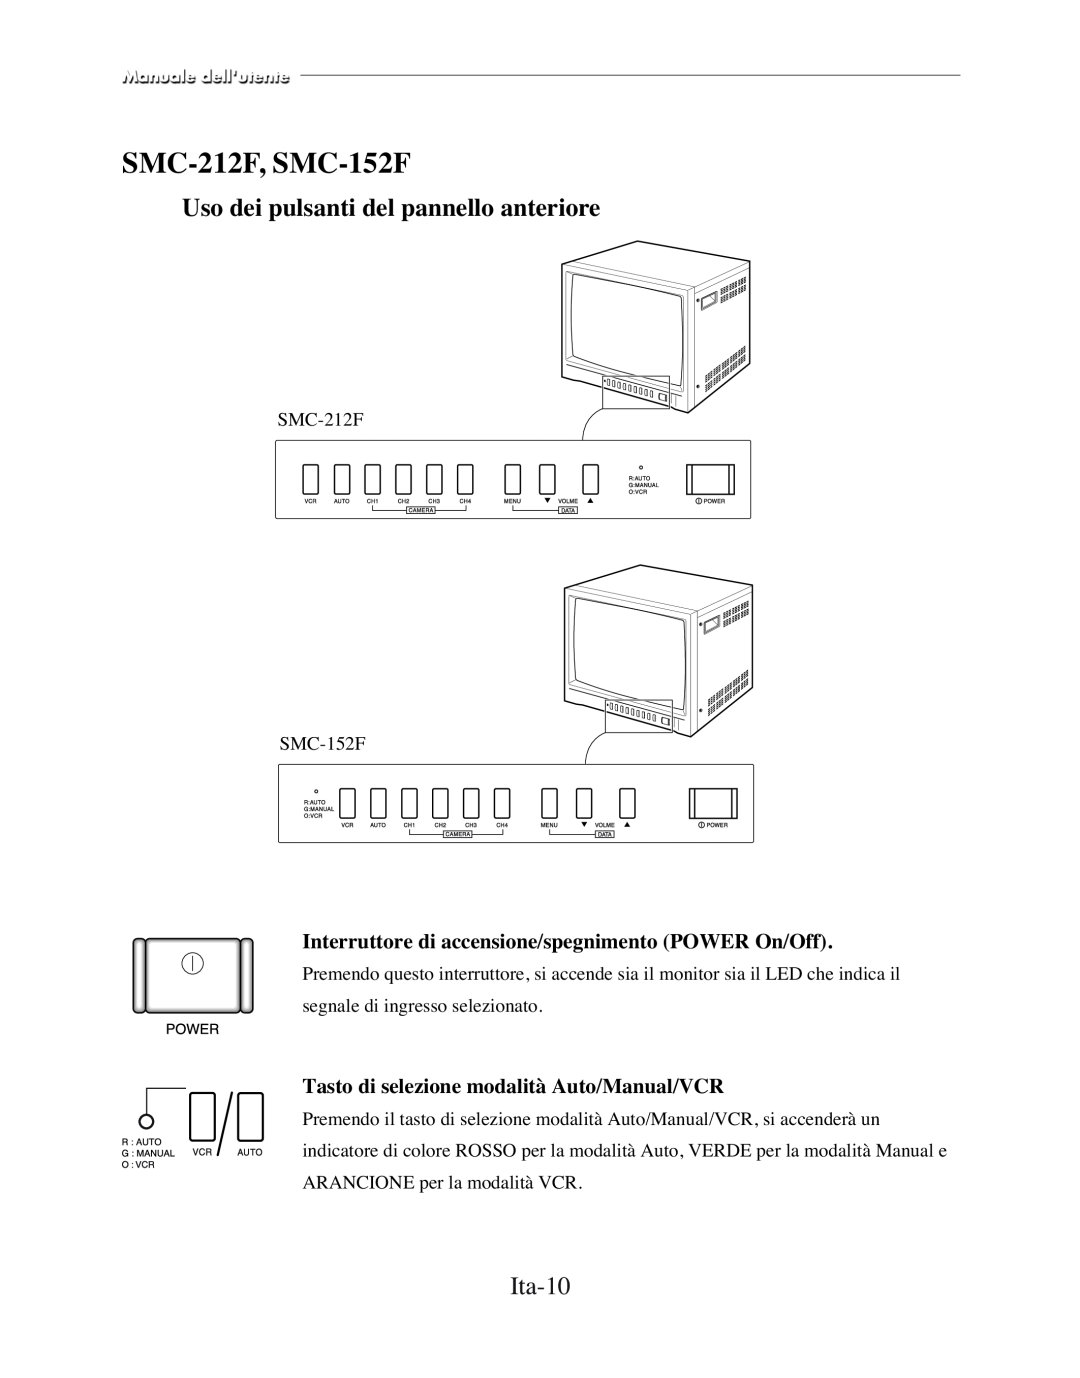 Samsung SMC-152FP manual SMC-212F, SMC-152F, Ita-10, Interruttore di accensione/spegnimento POWER On/Off 